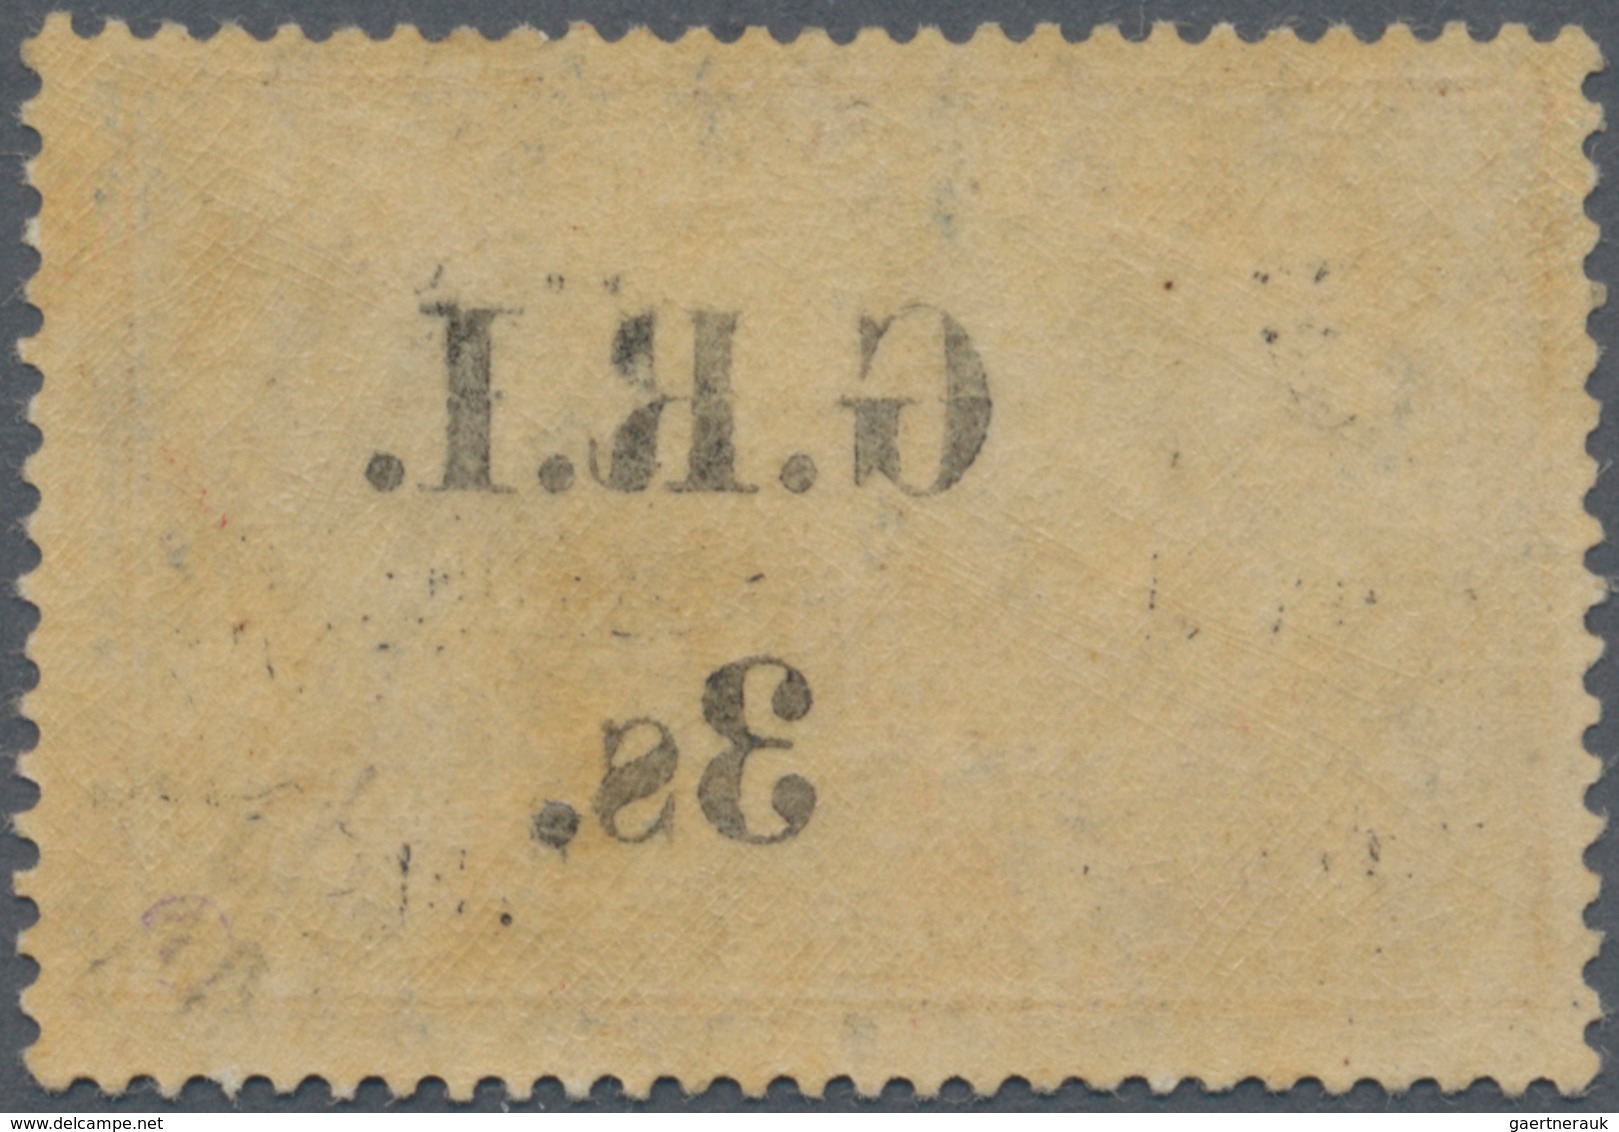 Deutsch-Neuguinea - Britische Besetzung: 1914: 3 S. Auf 3 M. Violettschwarz, Aufdruck 'G.R.I.' In Ty - Nuova Guinea Tedesca